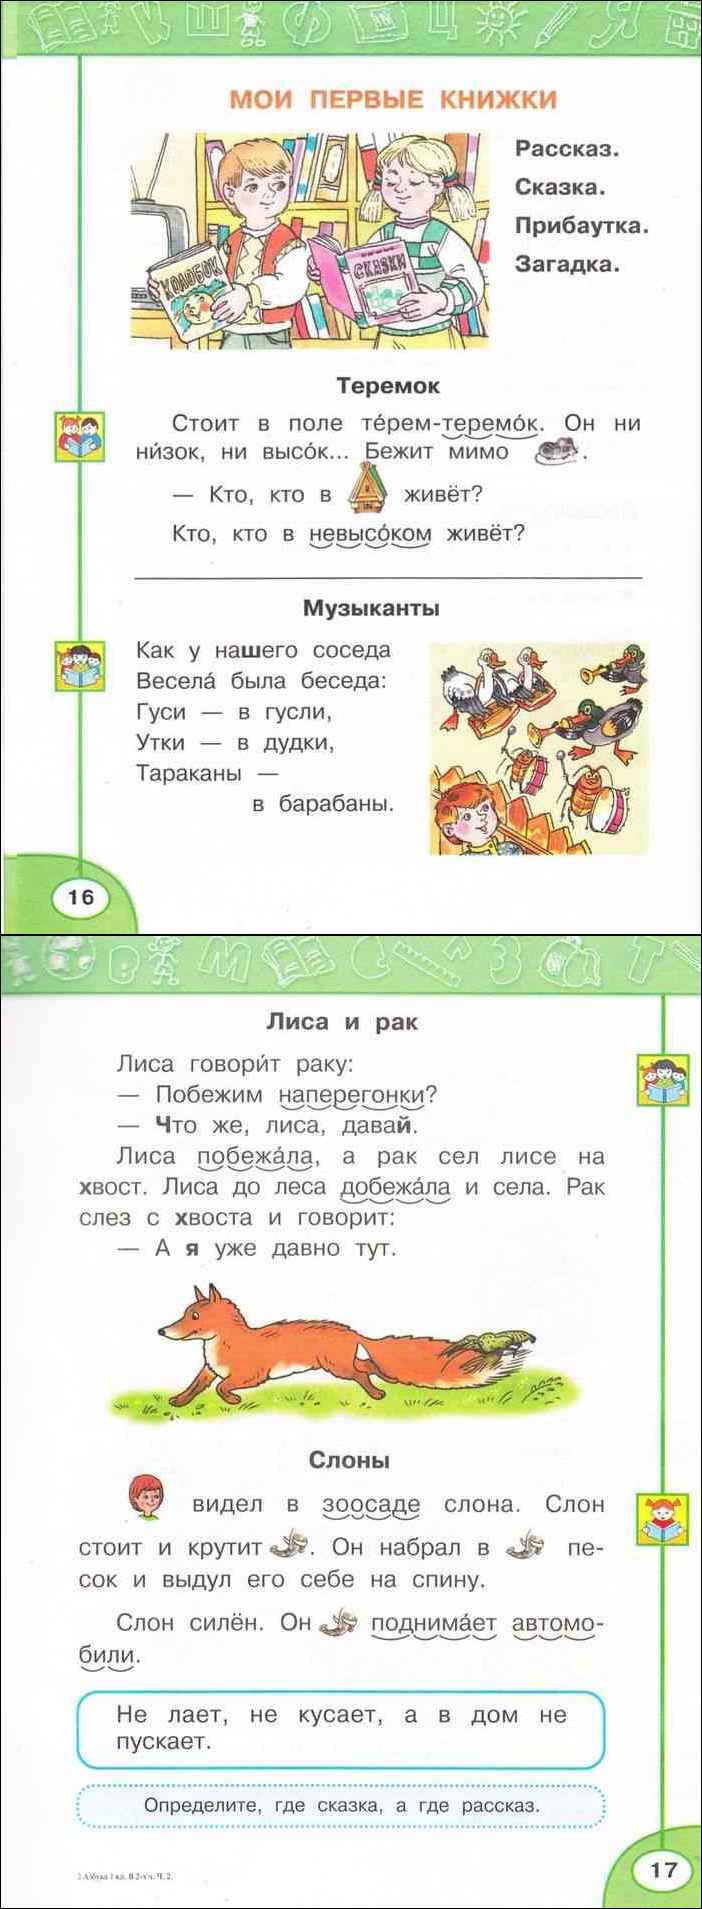 Русский язык 1 класс учебник климанова макеева. Азбука 1 класс 2 часть Климанова Макеева. Азбука вторая часть 1 класс.